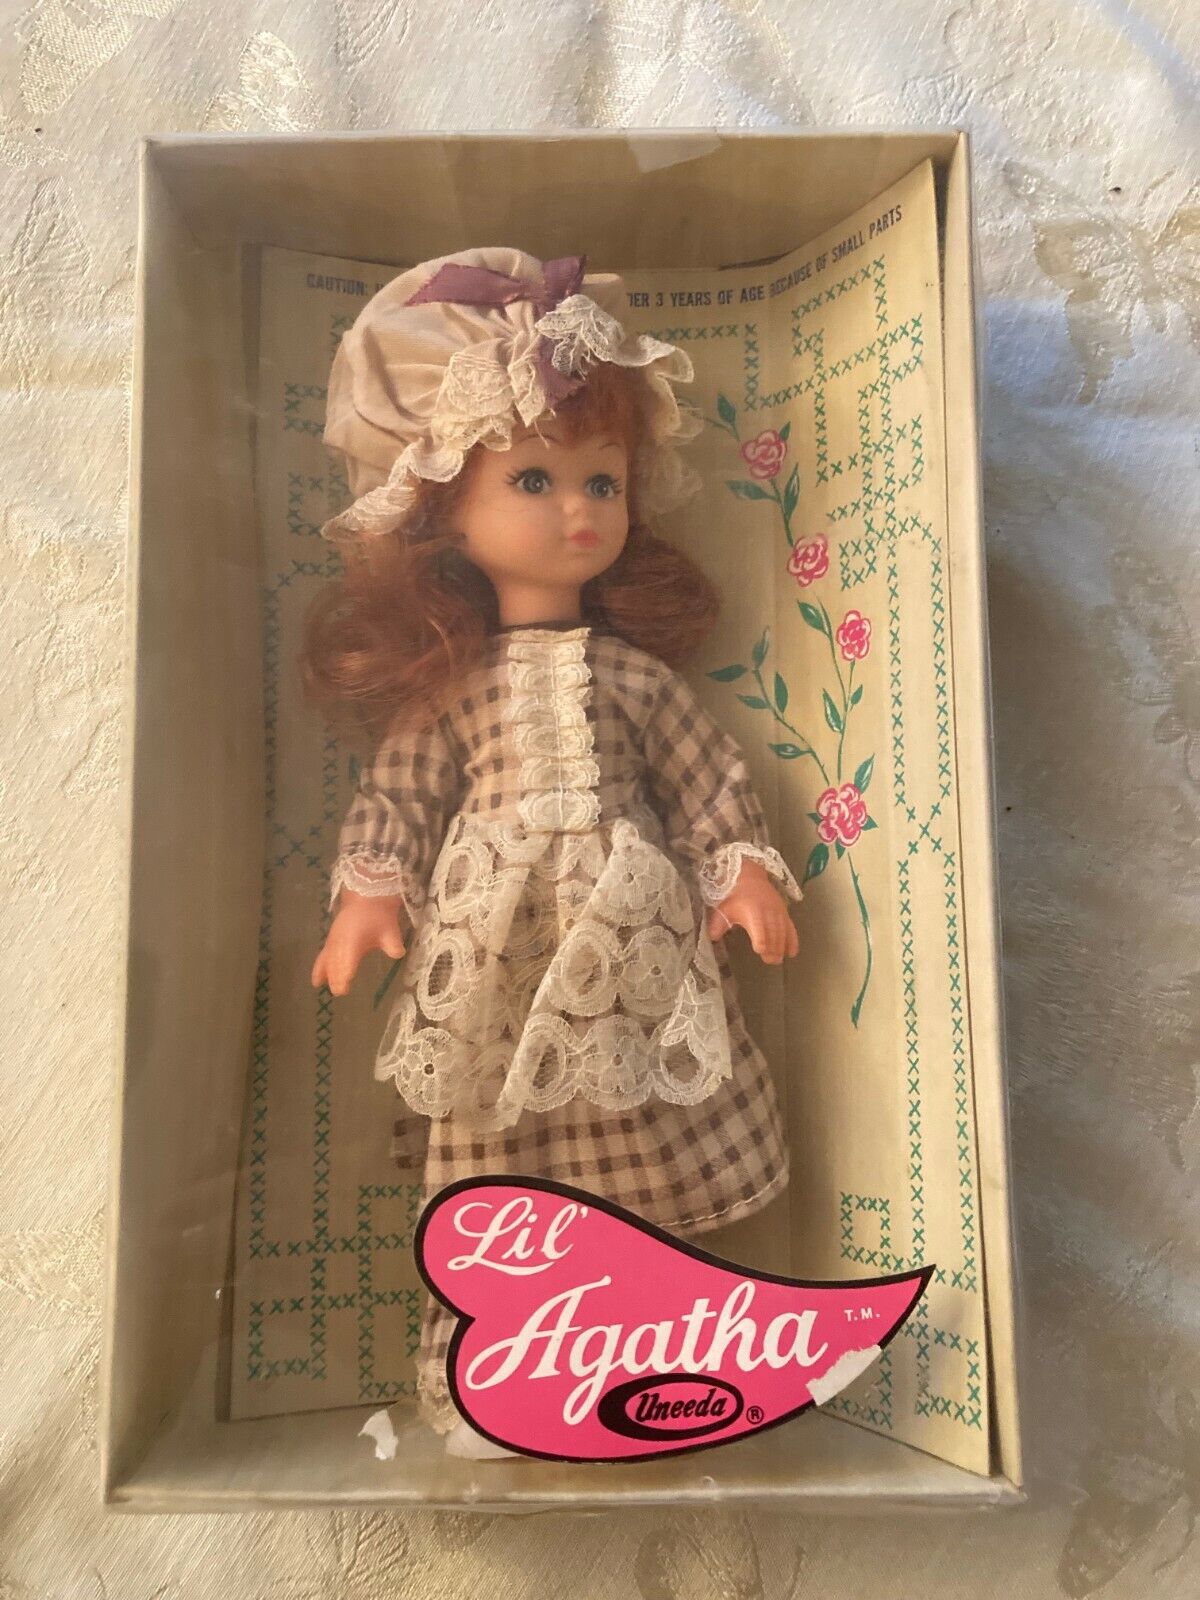 MG112:Uneeda Lil\' Agatha Early Americana Style Doll in Box 